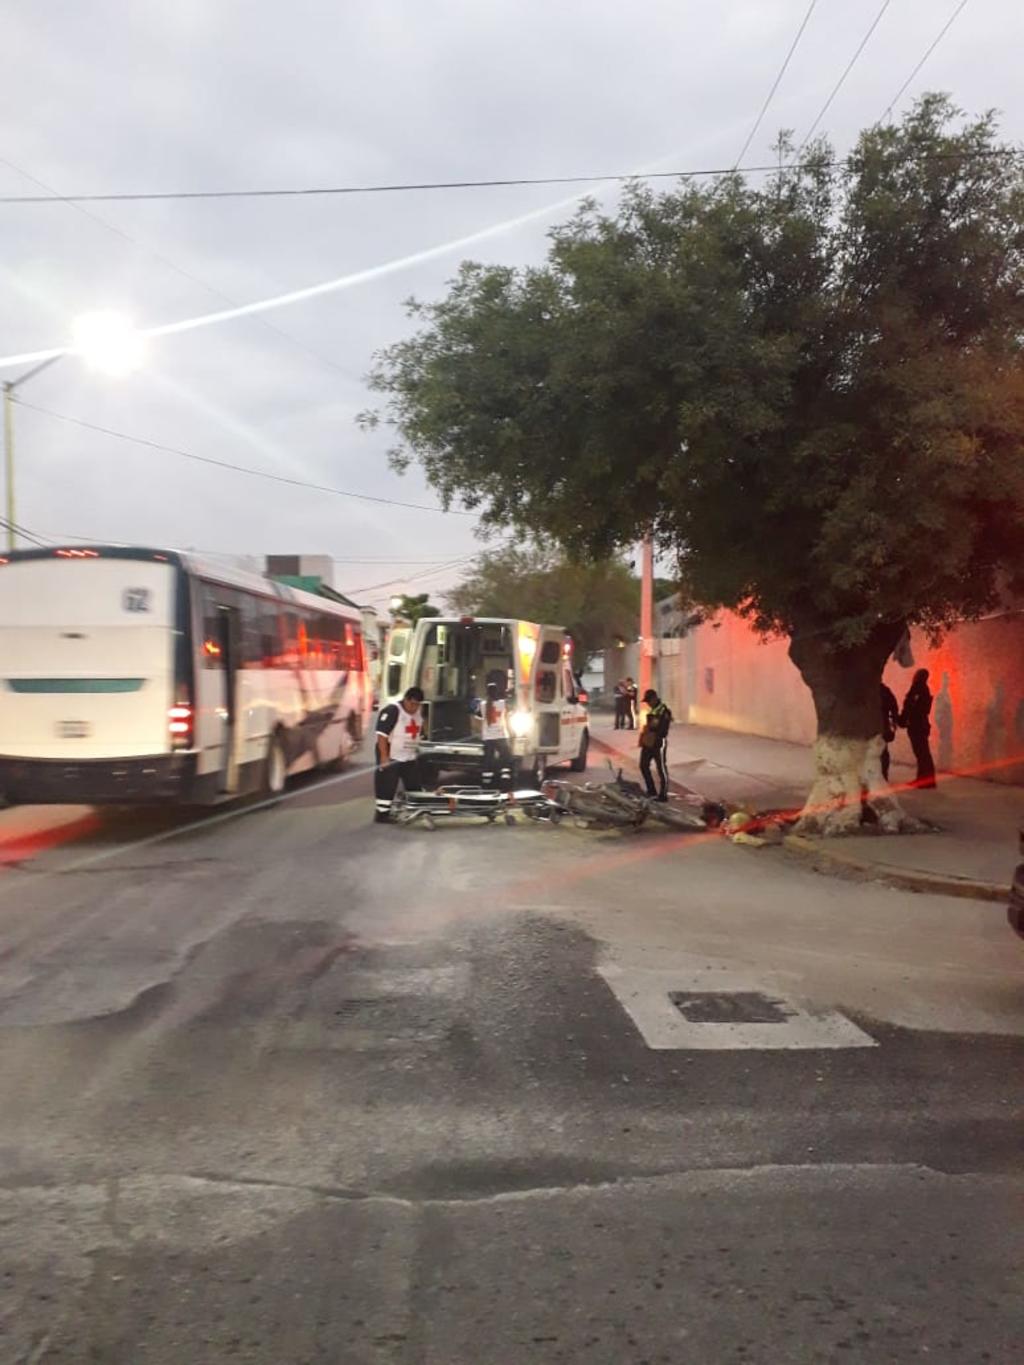 Paramédicos de la Cruz Roja arribaron al lugar para atender al lesionado, el cual fue trasladado en una ambulancia de la institución a la Clínica 51 del Instituto Mexicano del Seguro Social IMSS.
(EL SIGLO DE TORREÓN)